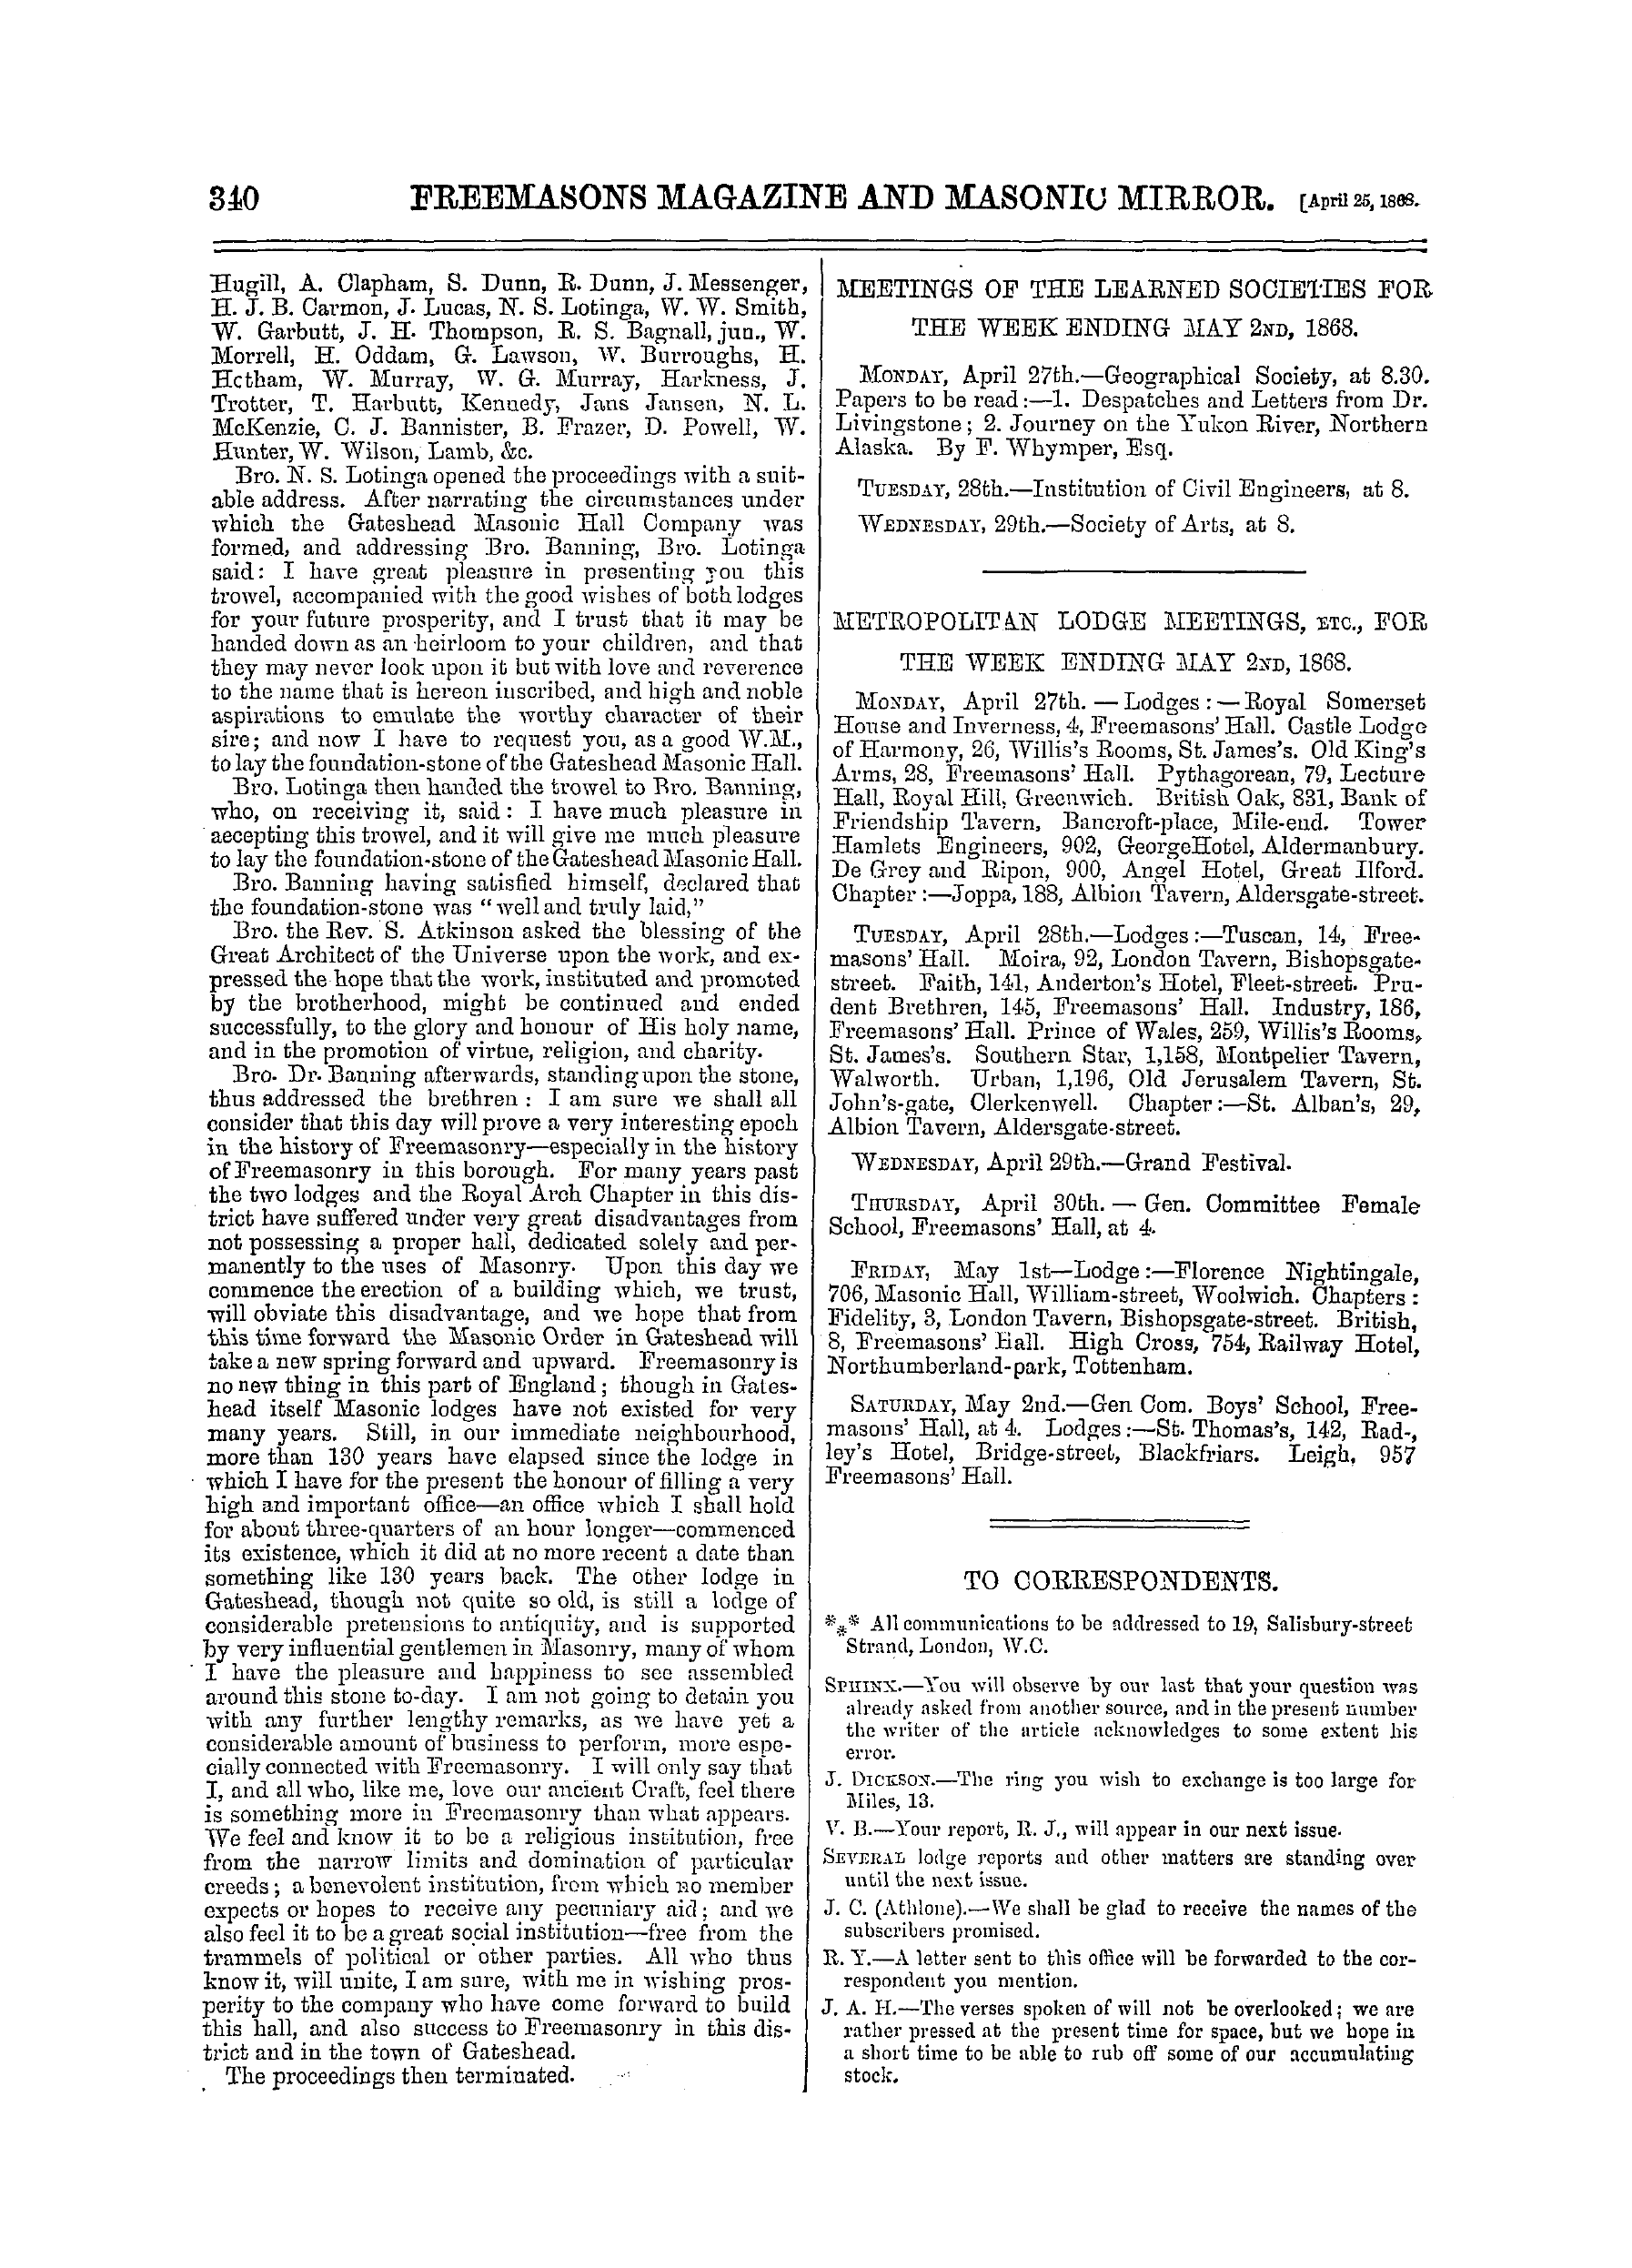 The Freemasons' Monthly Magazine: 1868-04-25: 20